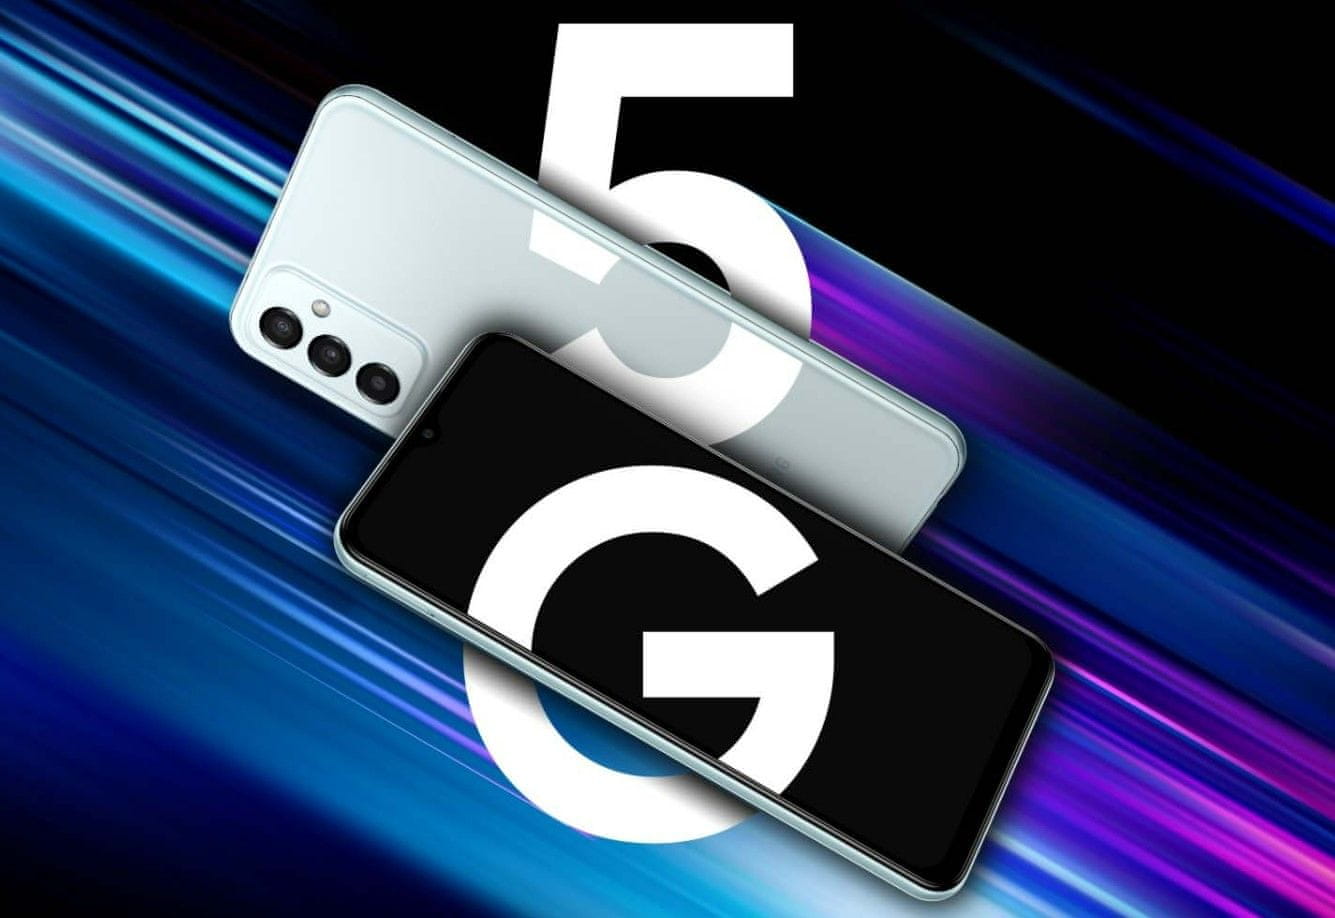 Samsung Galaxy M23 5G, telefon chytrý výkonný telefon smarphone HD+ rozlišení 120Hz obnovovací frekvence výkonný smartphone Qualcomm Snapdragon 5G připojení nejrychlejší připojení nejrychlejší síť 5G datové připojení bleskový internet